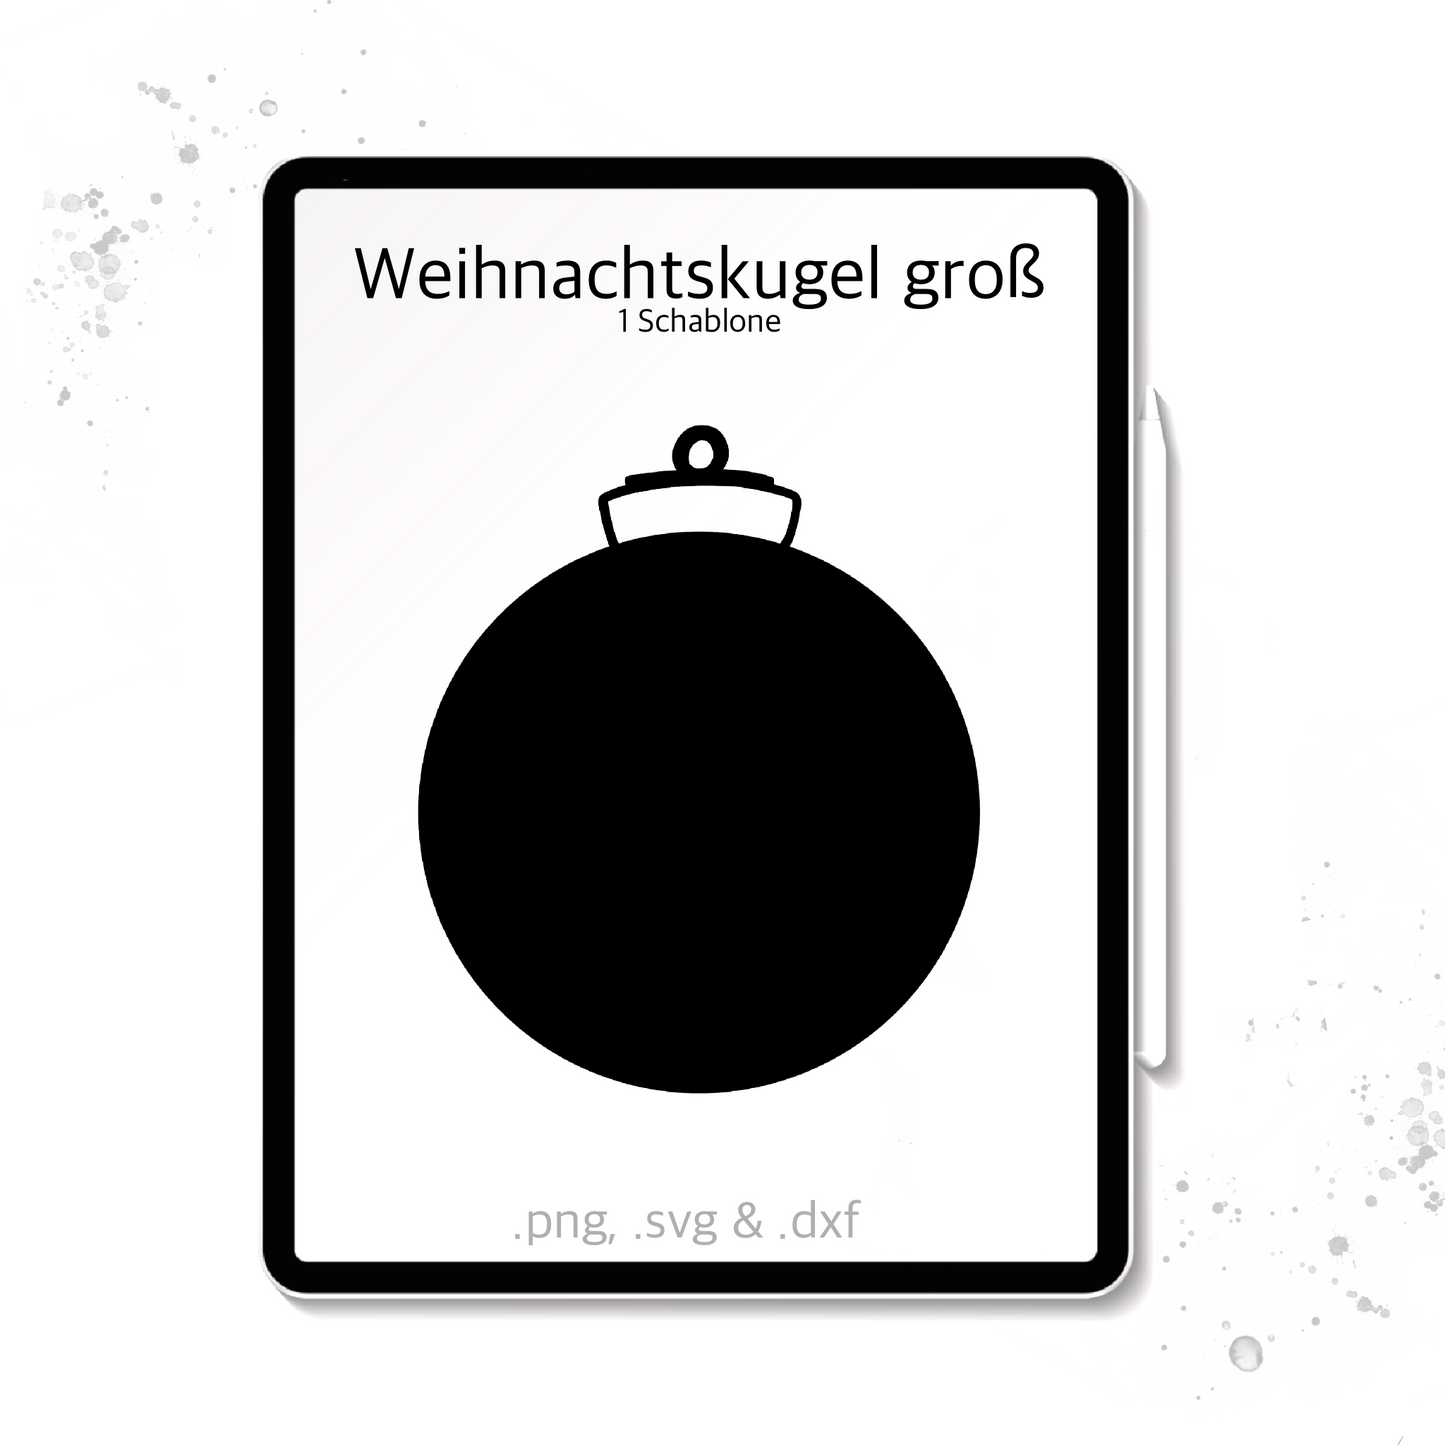 Plotterdatei / Laserdatei Schablonen "Weihnachtskugel groß" (.dxf, .svg und .png)